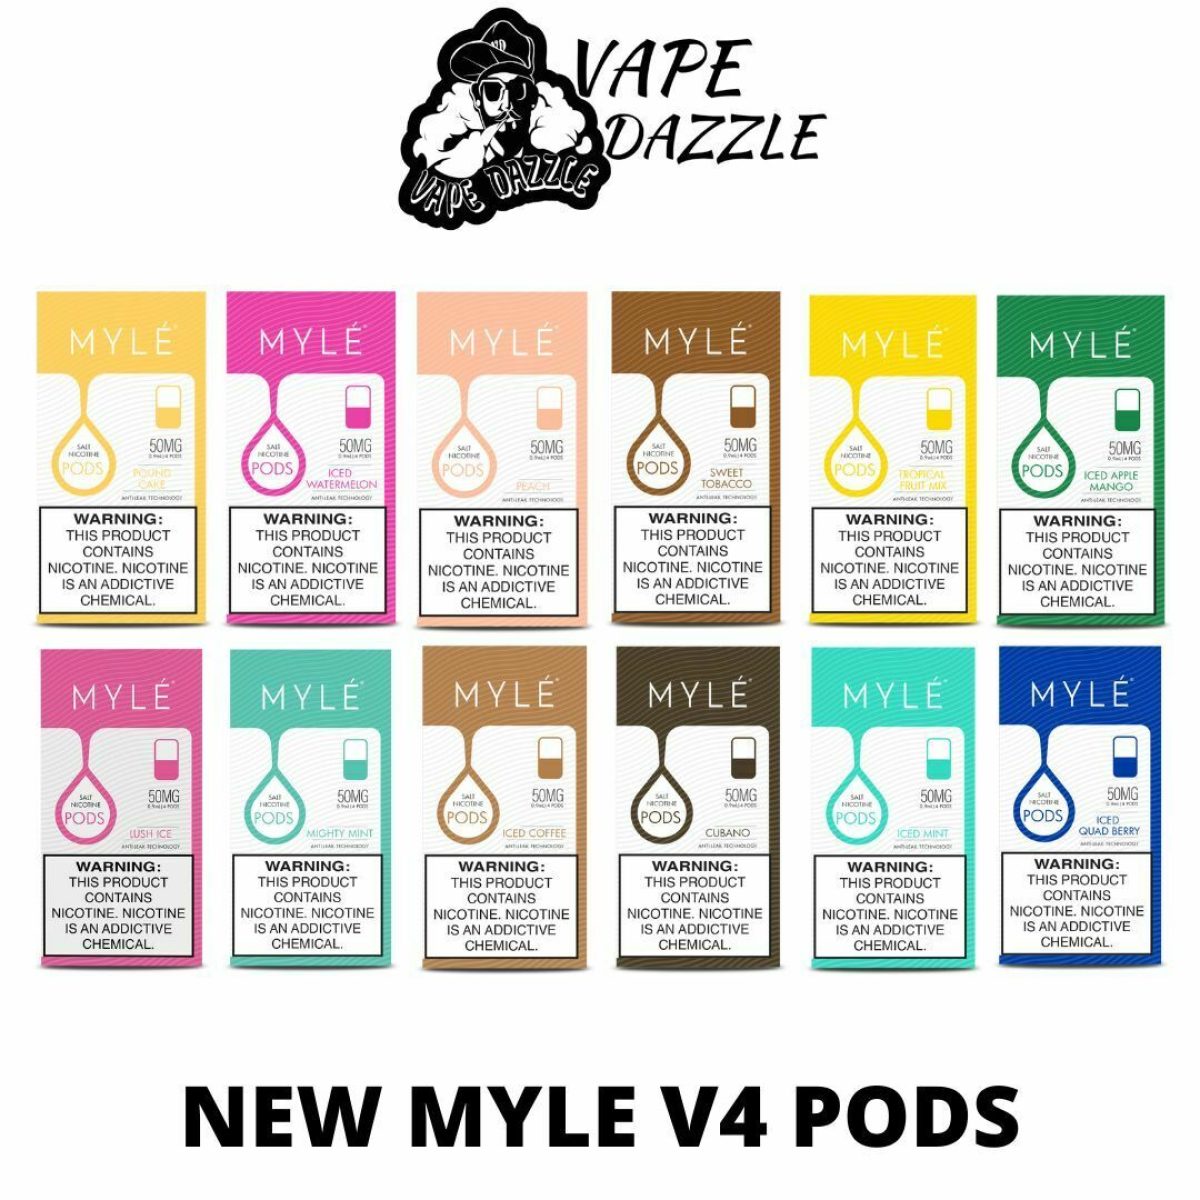 MYLE V4 PODS | NEW MYLE V4 DUBAI, UAE - Vapedazzle AE